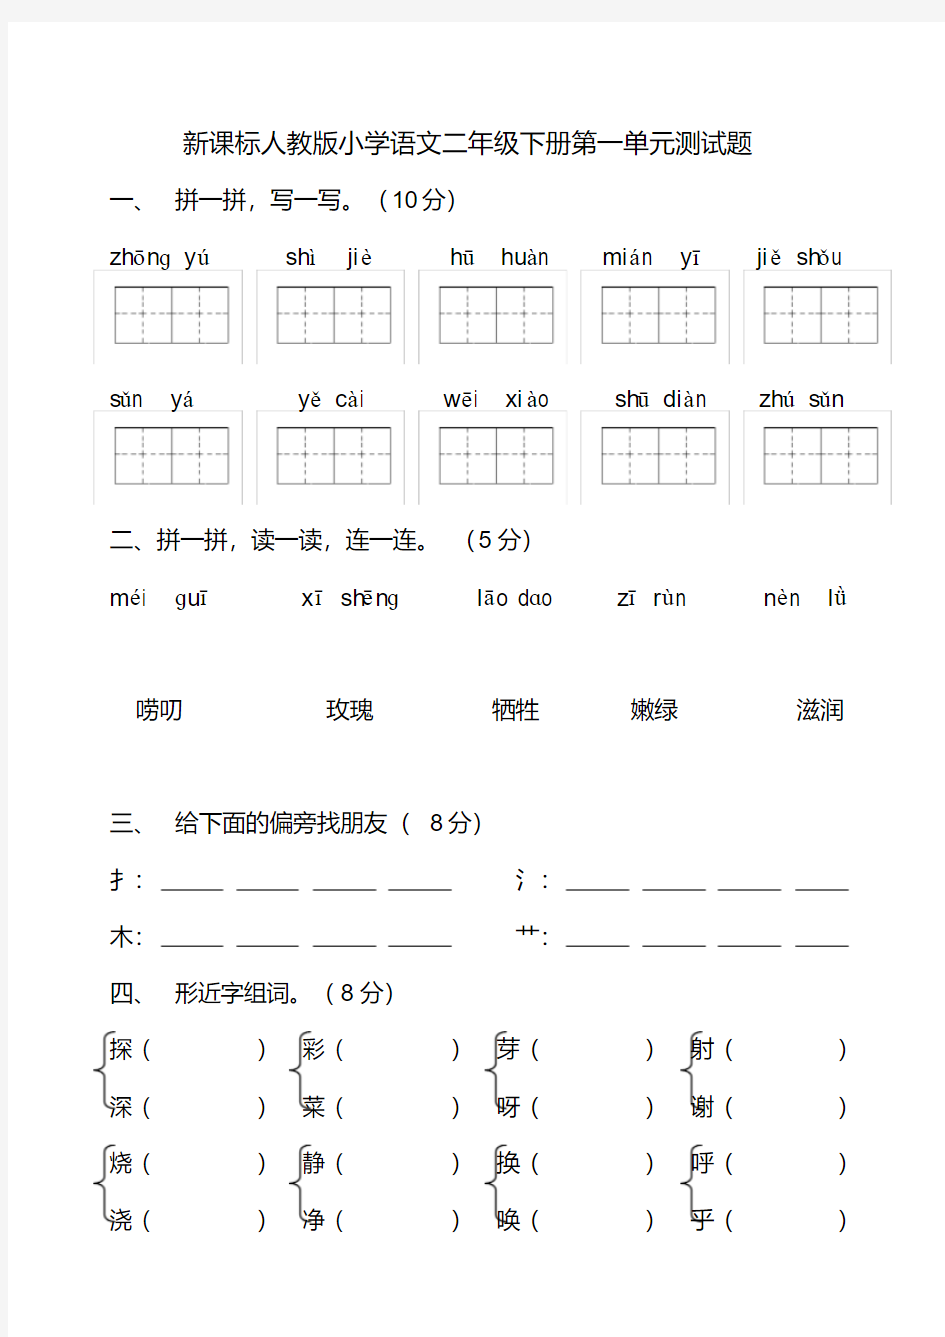 (完整word)二年级下册语文试卷全集.pdf